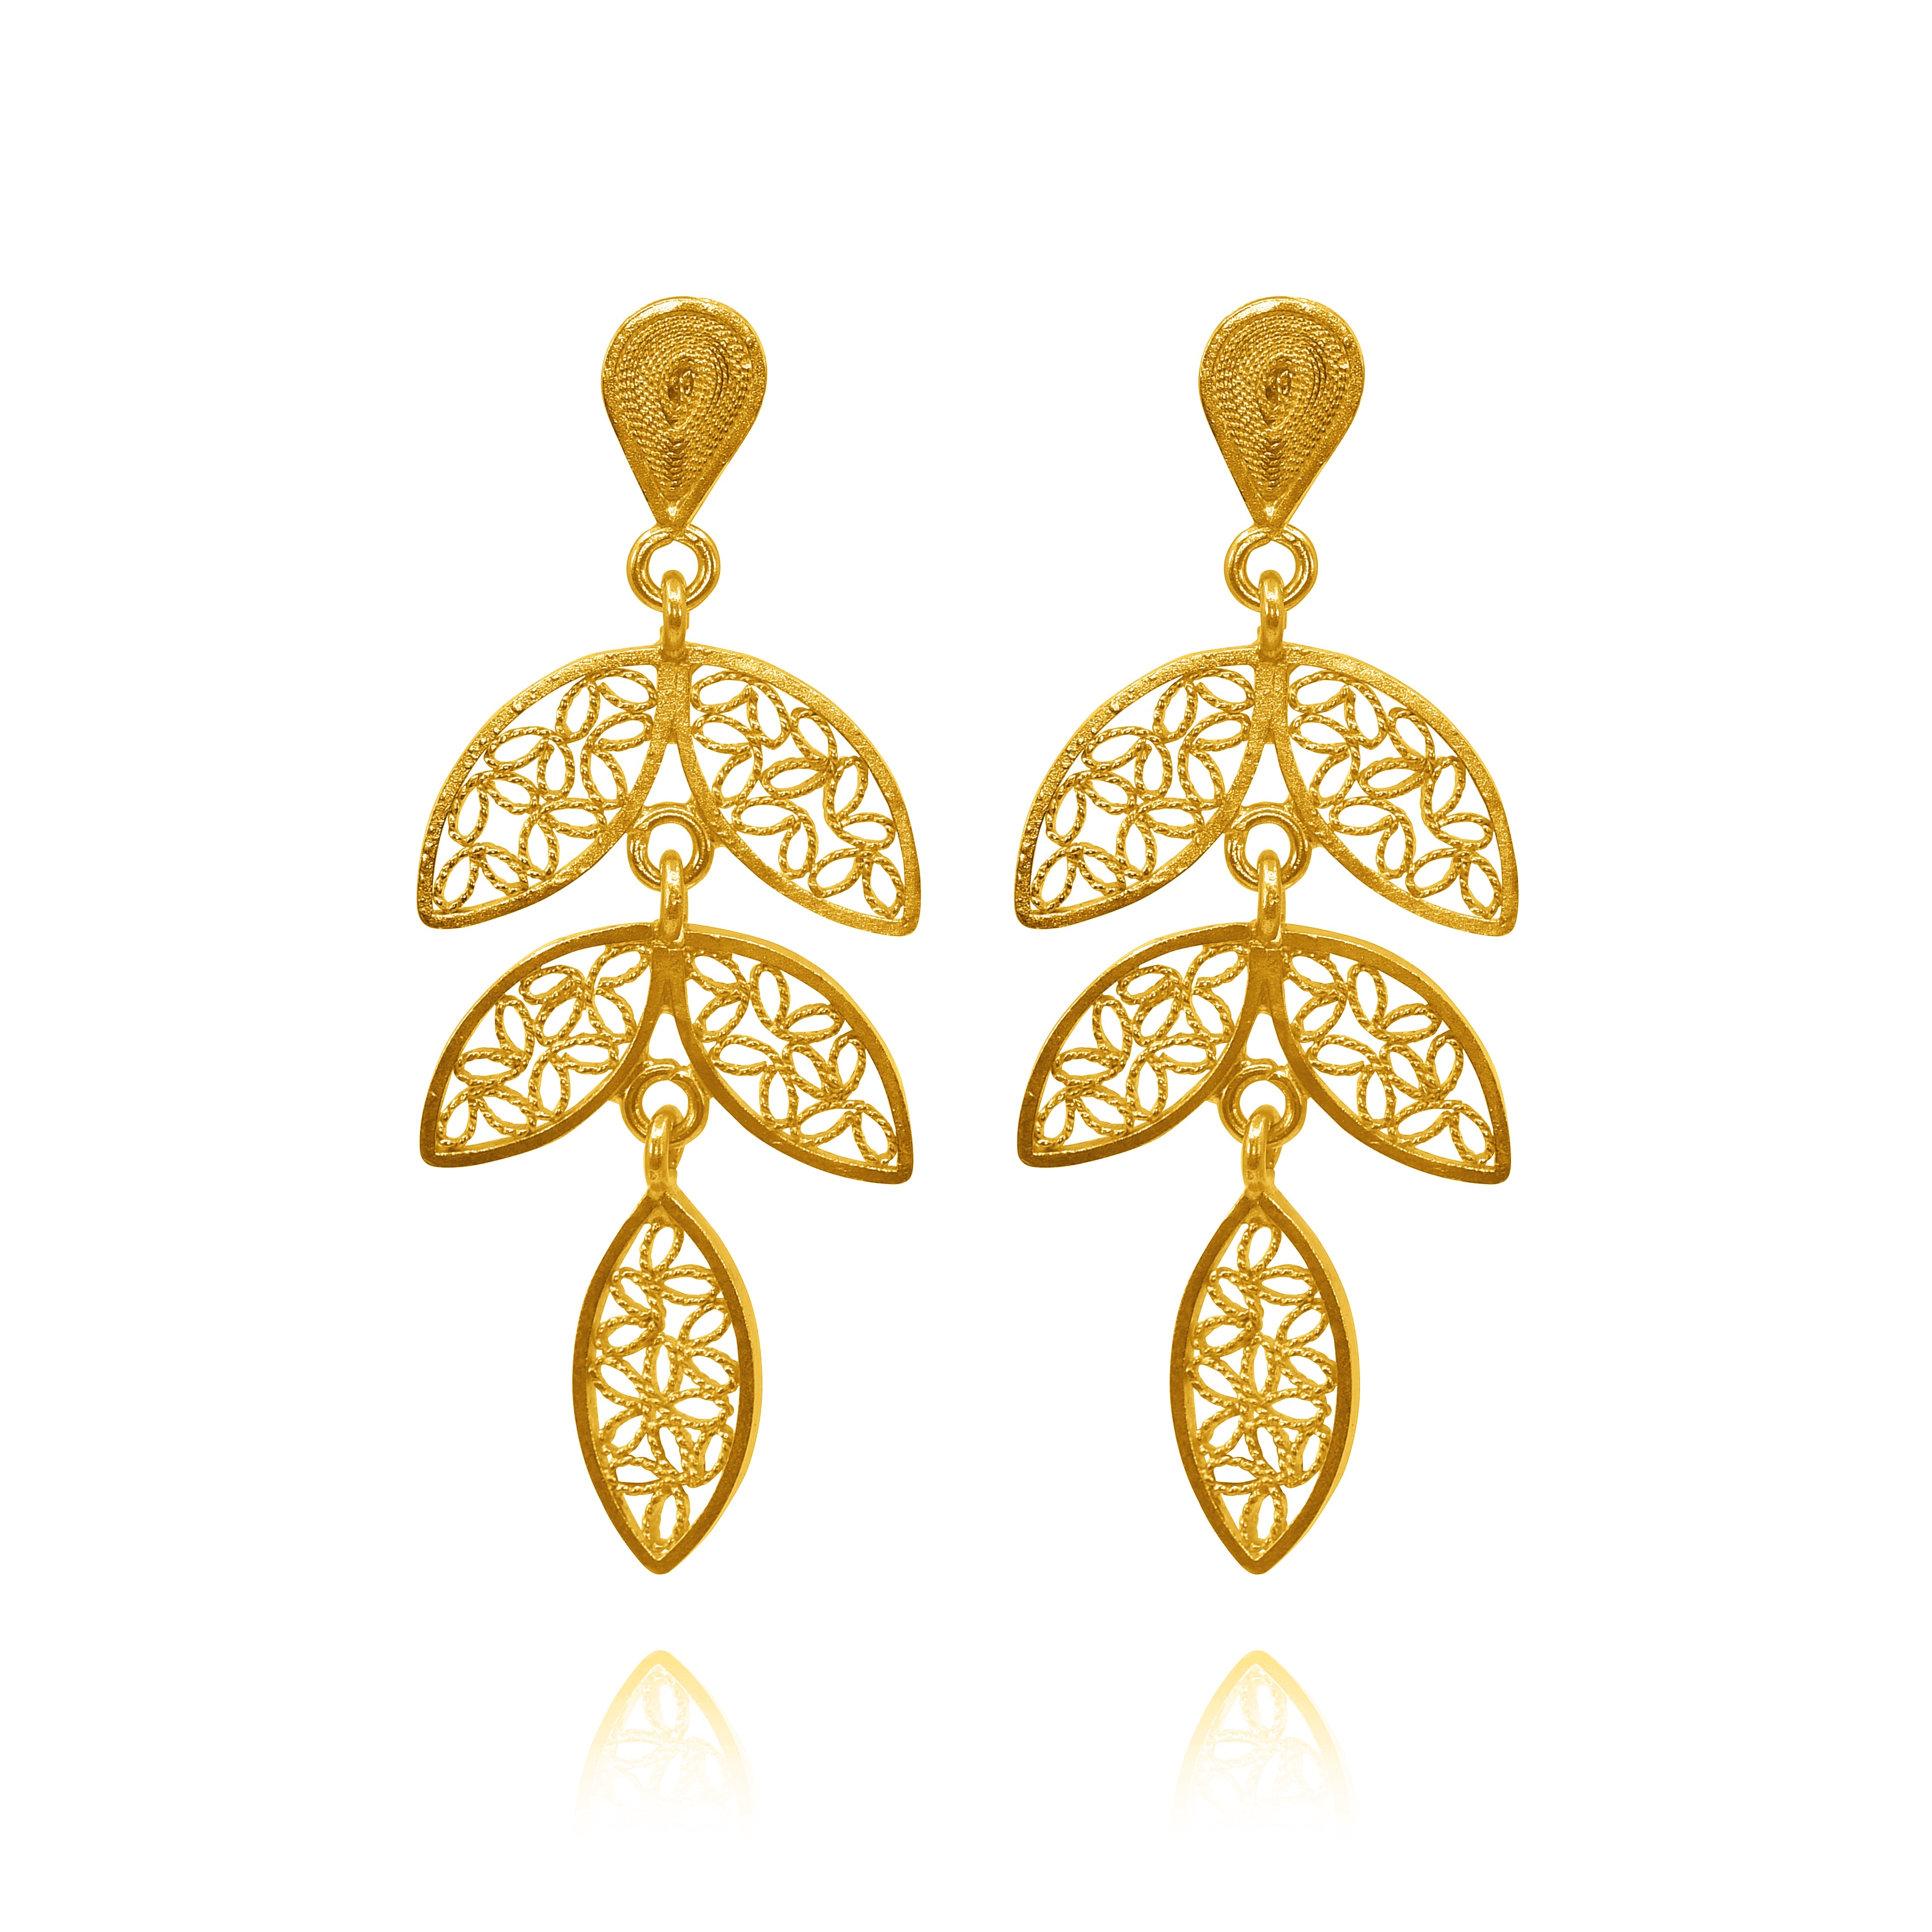 Gold Earrings For Women | Latest Design Of Gold Earrings | Kalyan Jewellers